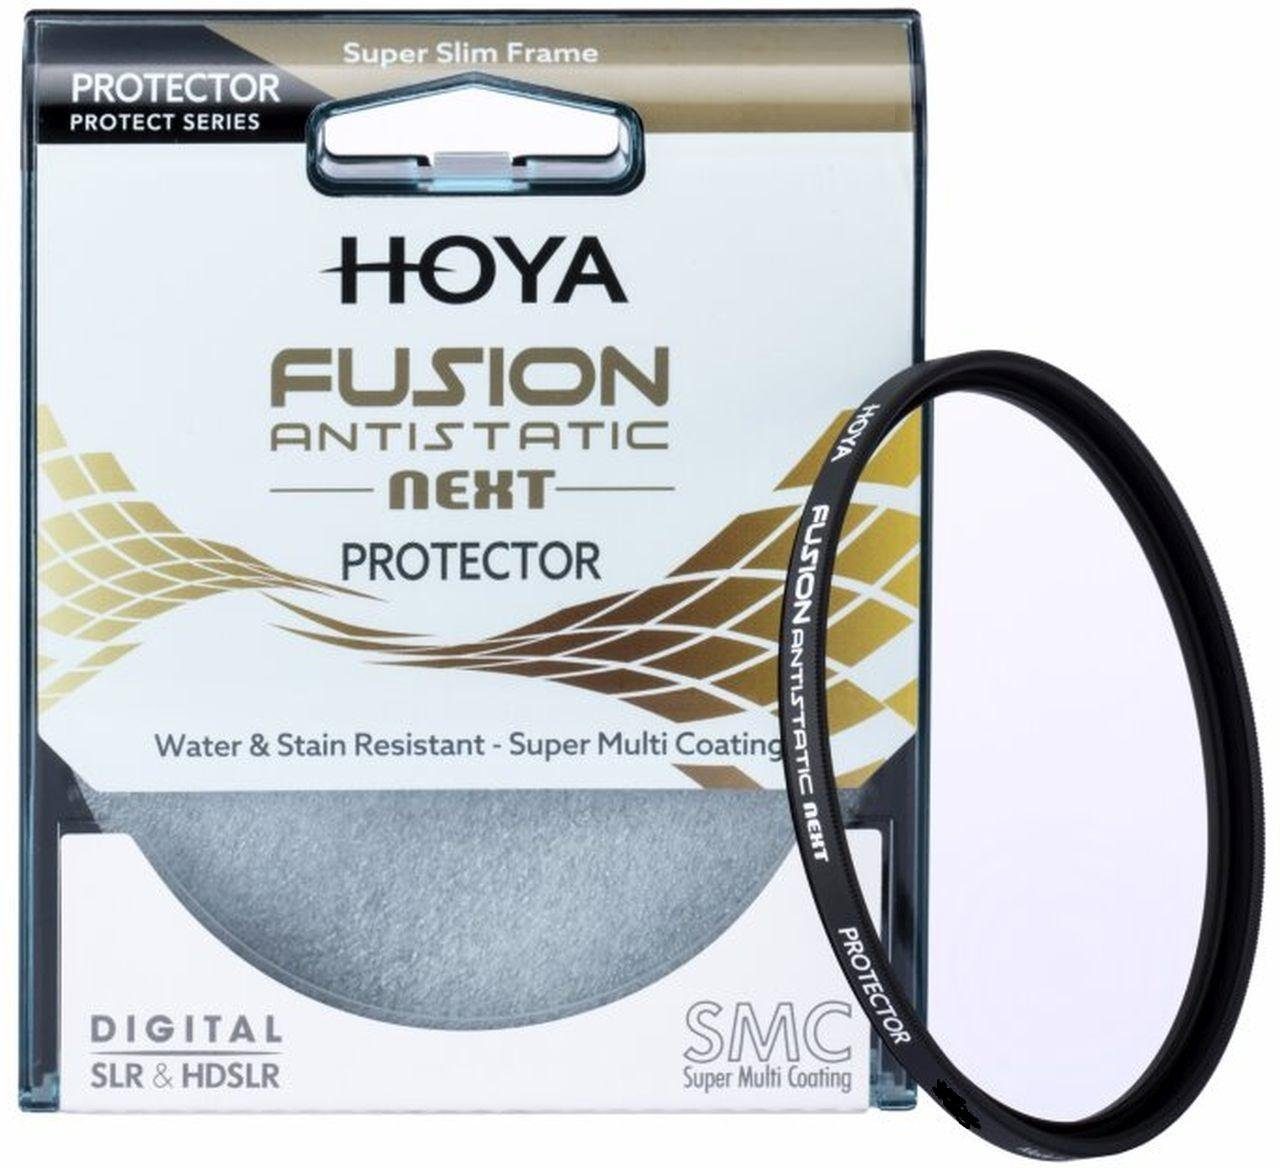 Hoya Fusion Antistatic Next Protector 49mm Objektivzubehör